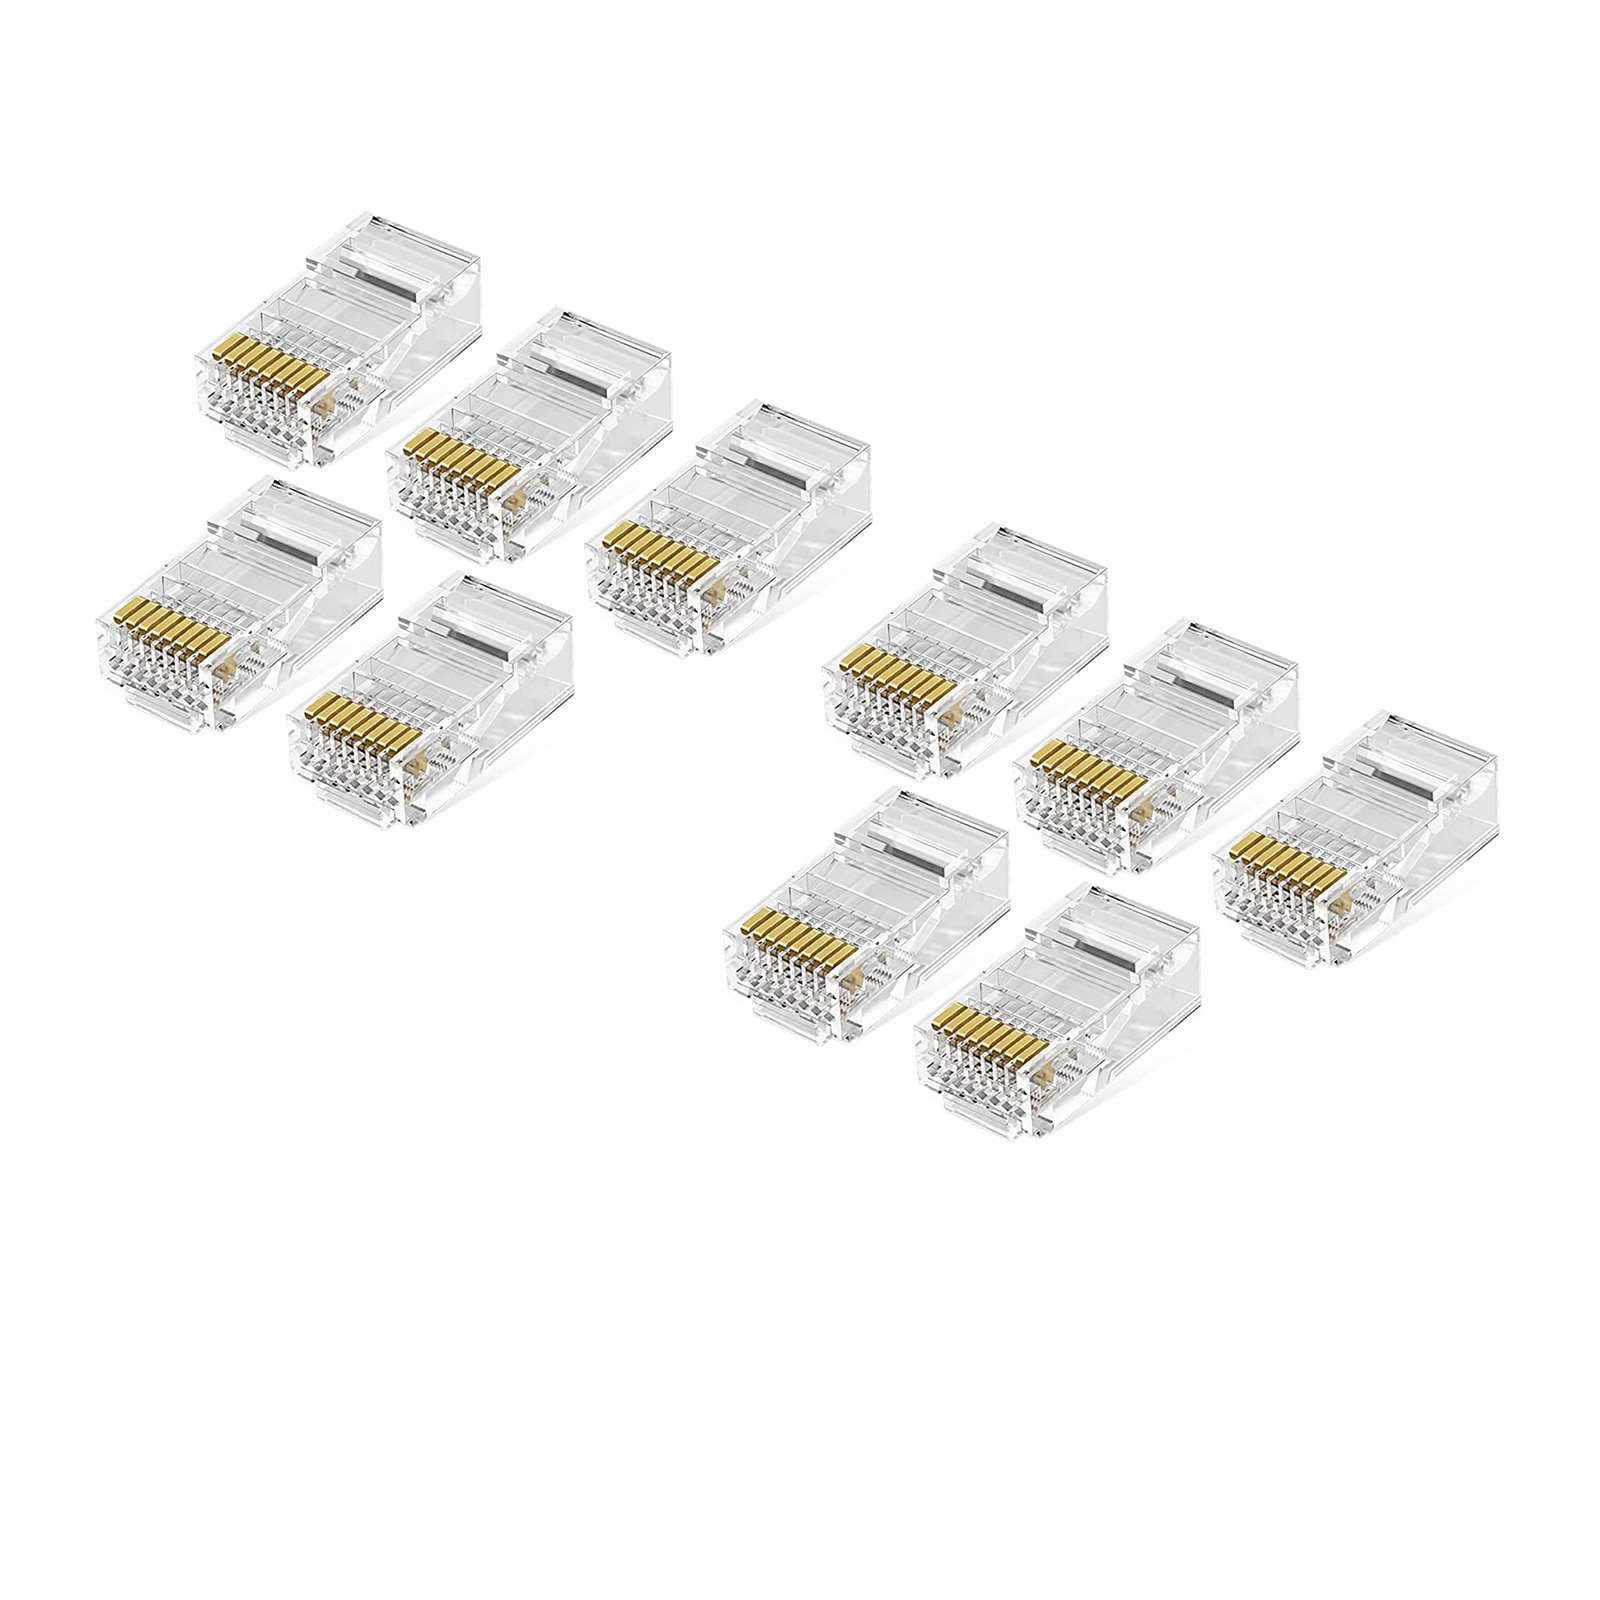 Lot de 10 connecteurs modules RJ45 | 8 points | 8 contacts | Blindés | Catégorie 5E/6 UTP | Pour câble souple